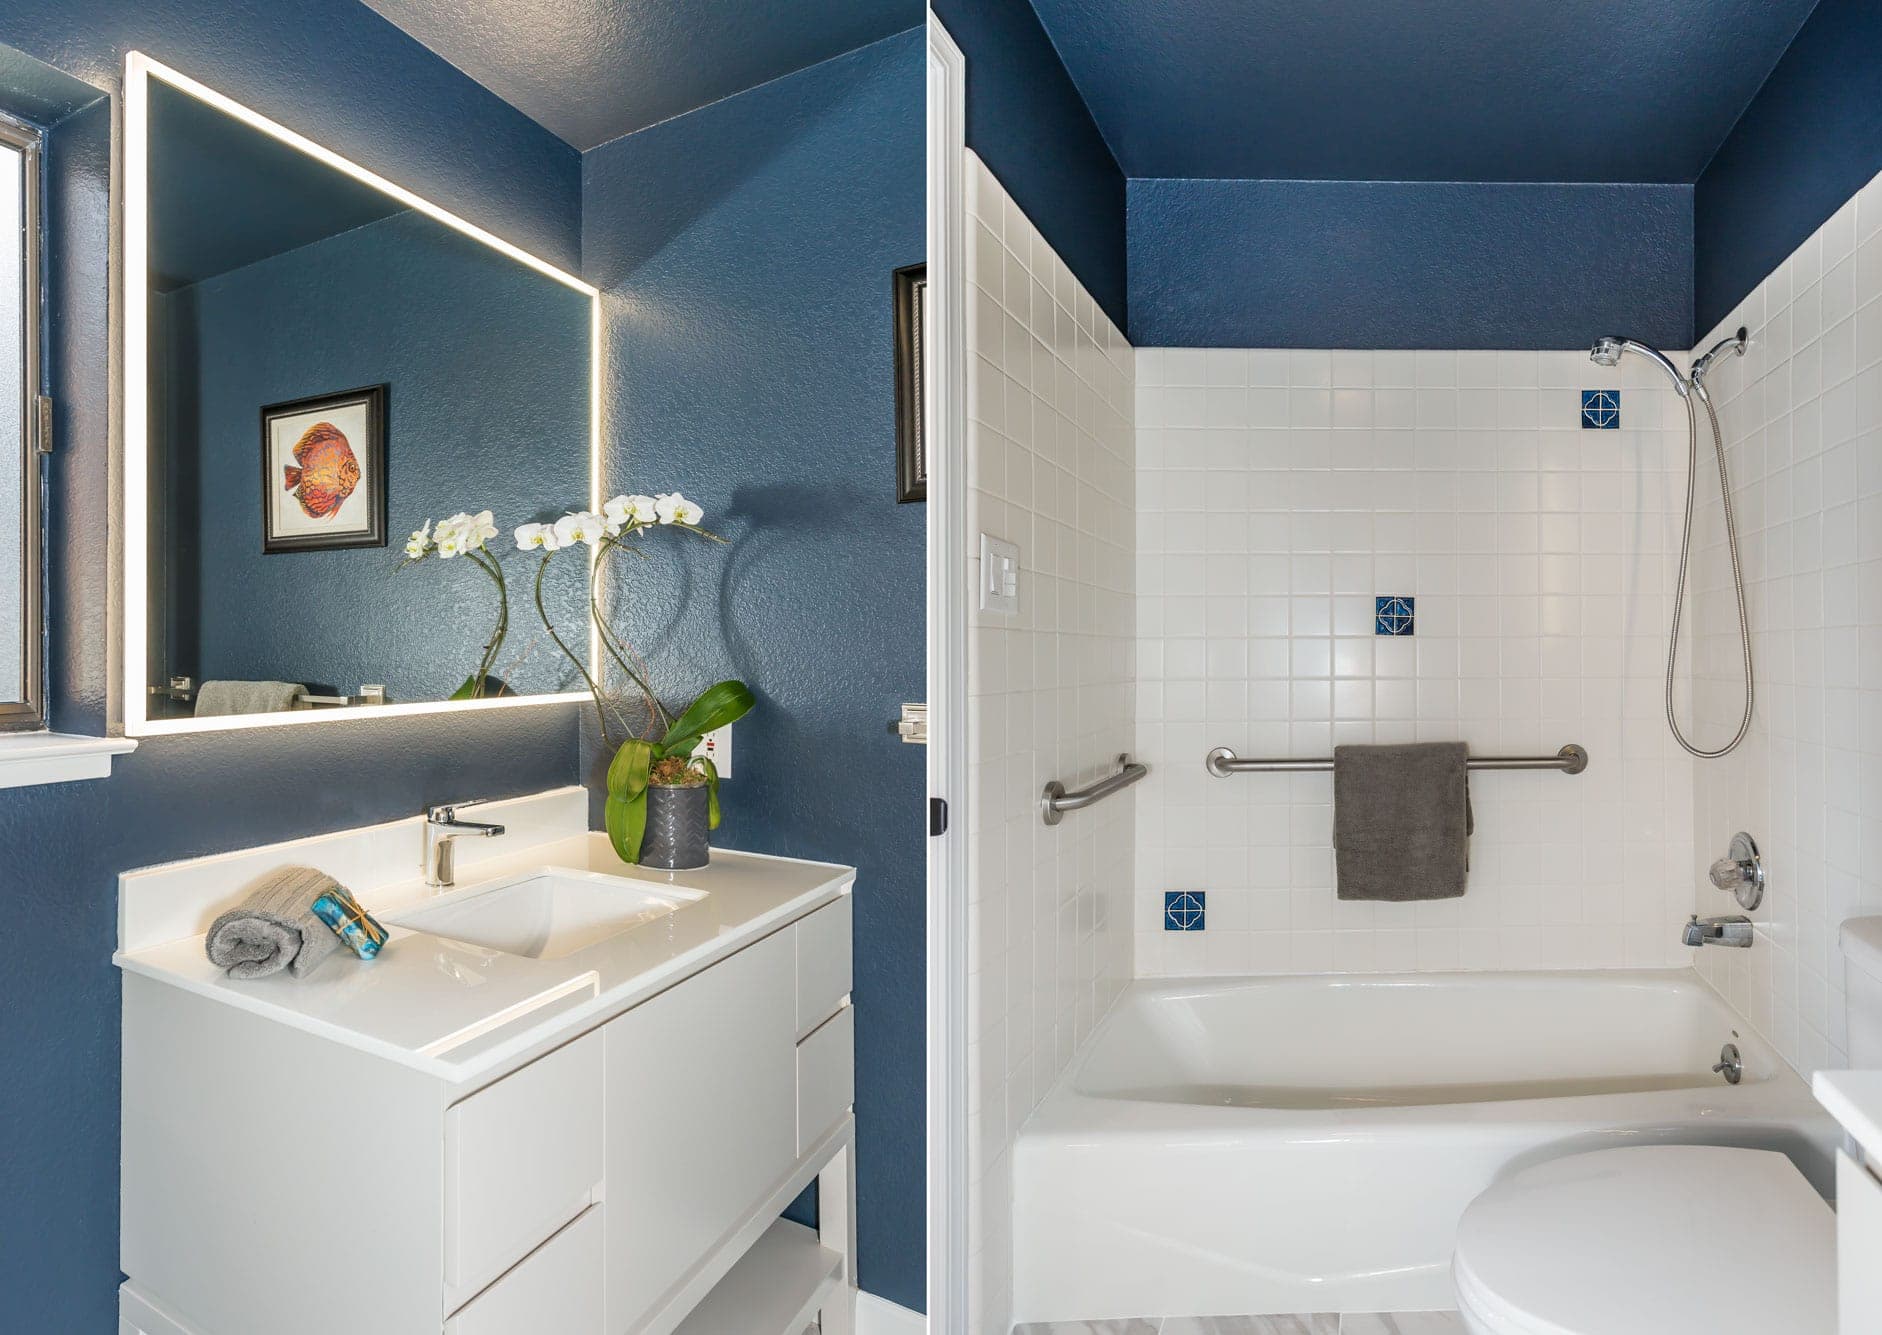 Both of 375 15th Avenue's bathrooms have been updated with new designer Benjamin Moore paint, lit vanity mirror, tile and bath vanities.